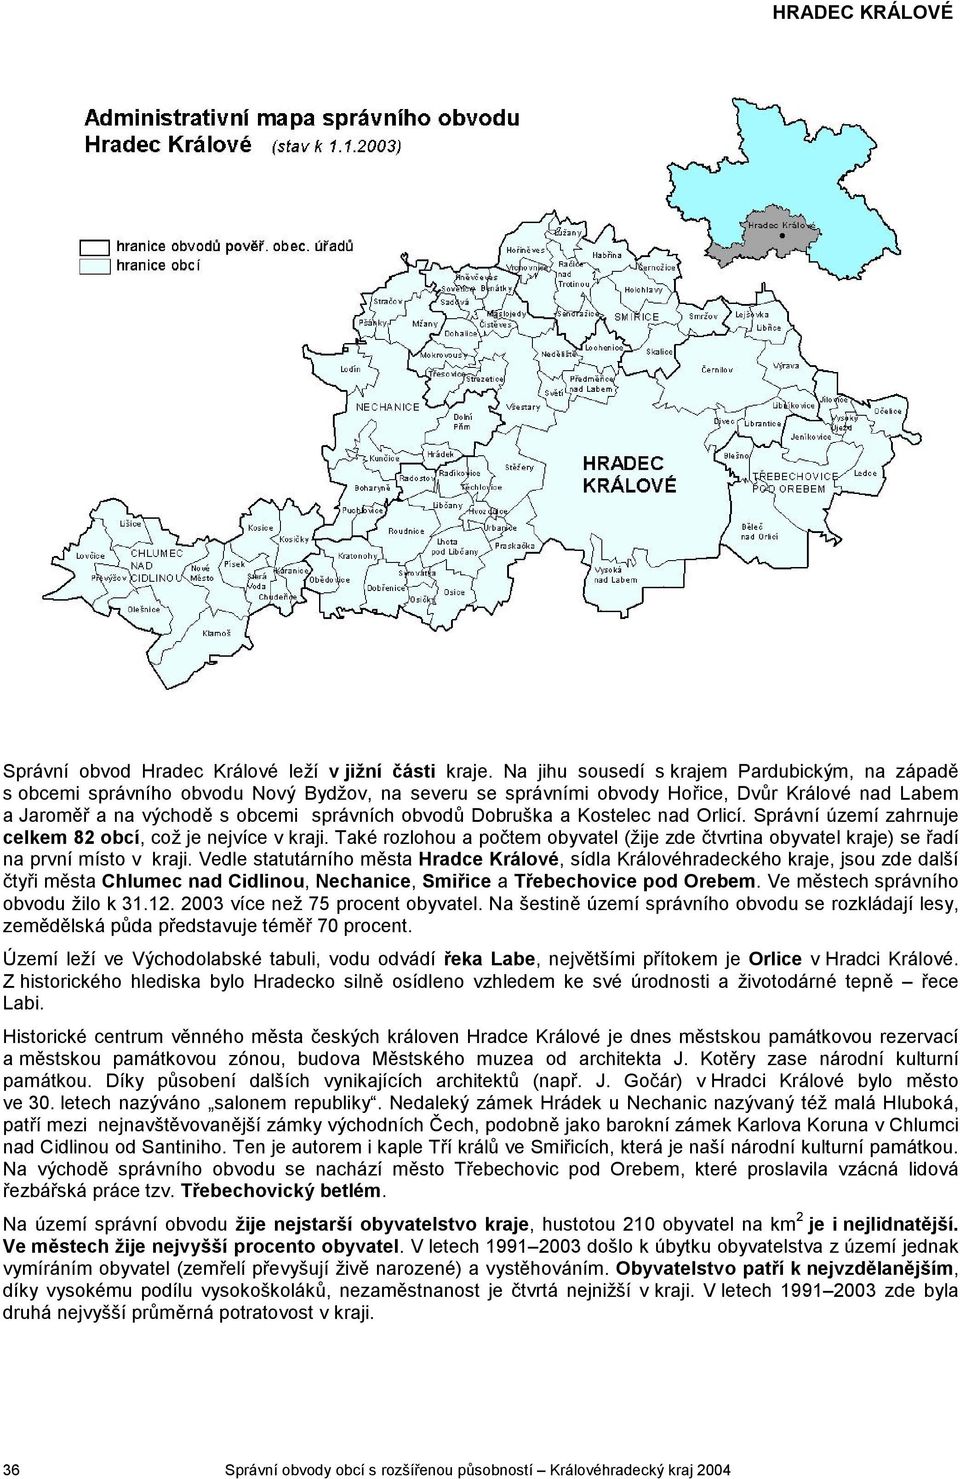 Dobruška a Kostelec nad Orlicí. Správní území zahrnuje 82 obcí, což je nejvíce v kraji. Také rozlohou a počtem obyvatel (žije zde čtvrtina obyvatel kraje) se řadí na první místo v kraji.